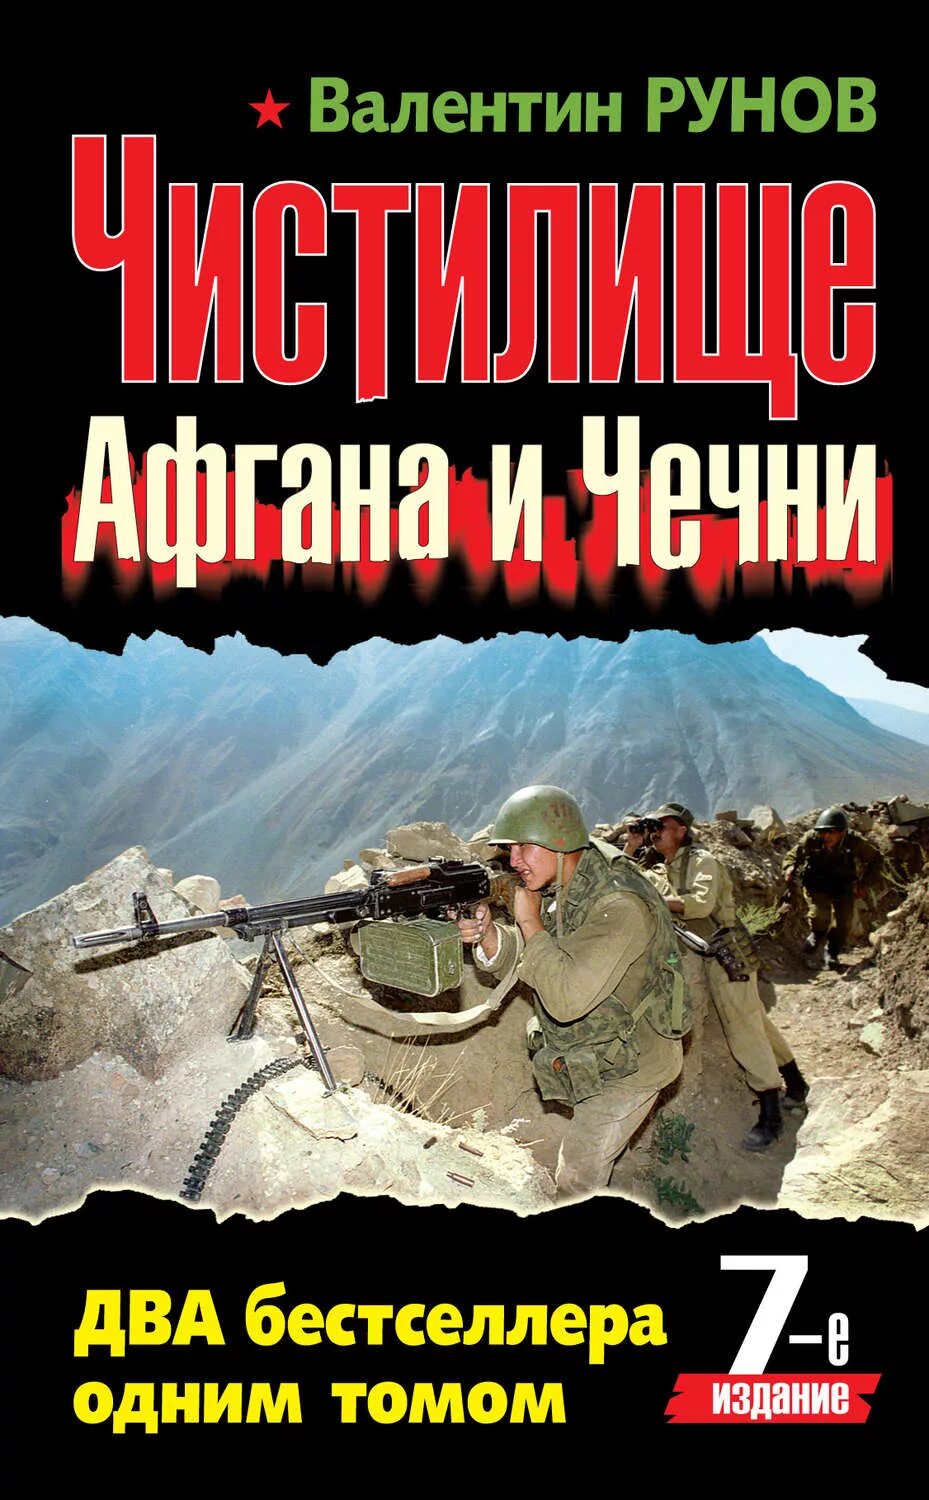 Чистилище Афгана и Чечни книга. Книги о войне в Чечне. Читать книги про войну чечня